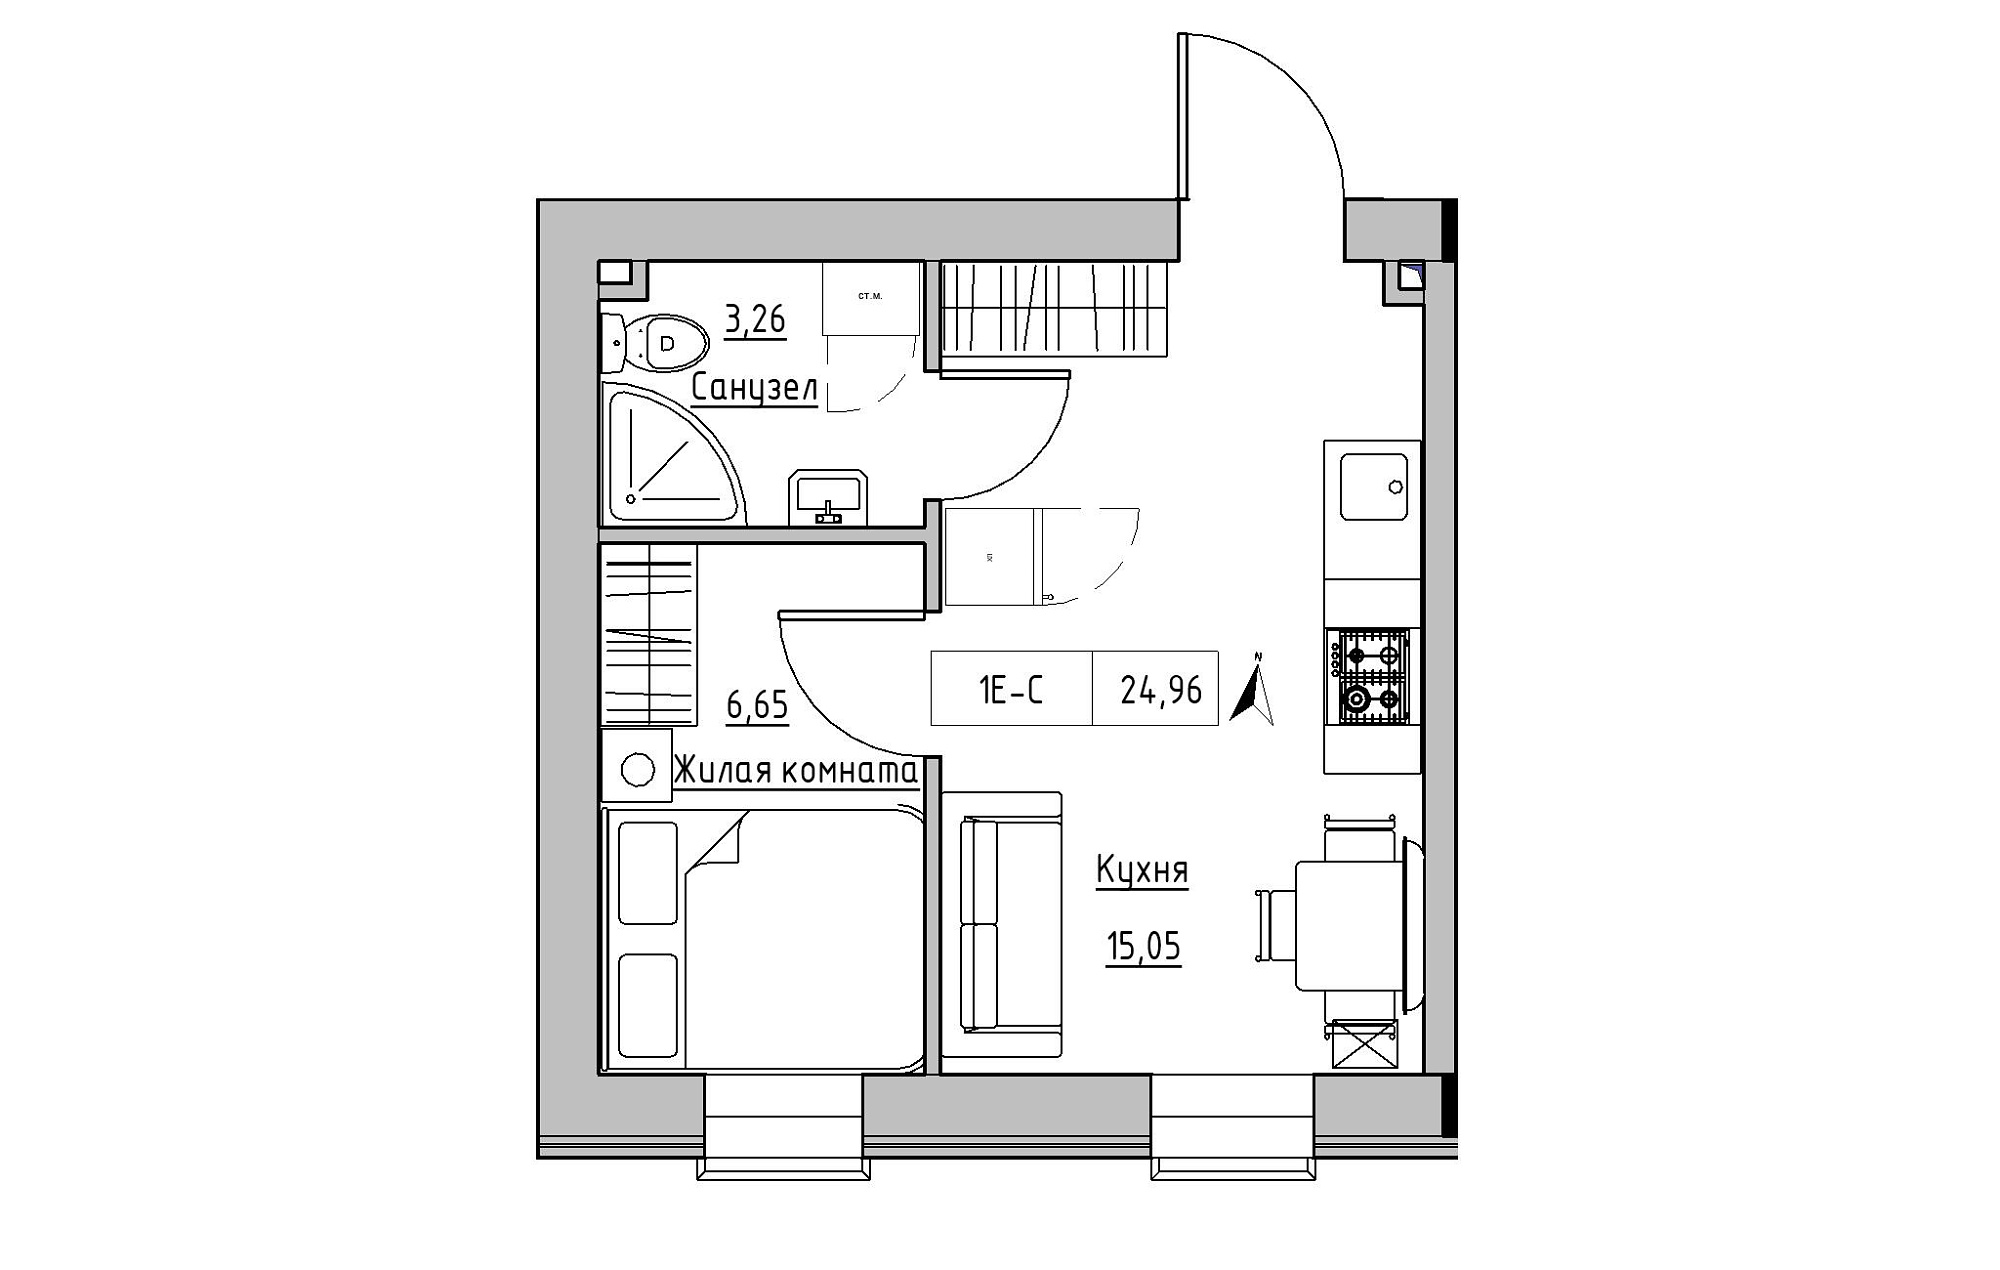 Планування 1-к квартира площею 24.96м2, KS-019-04/0012.